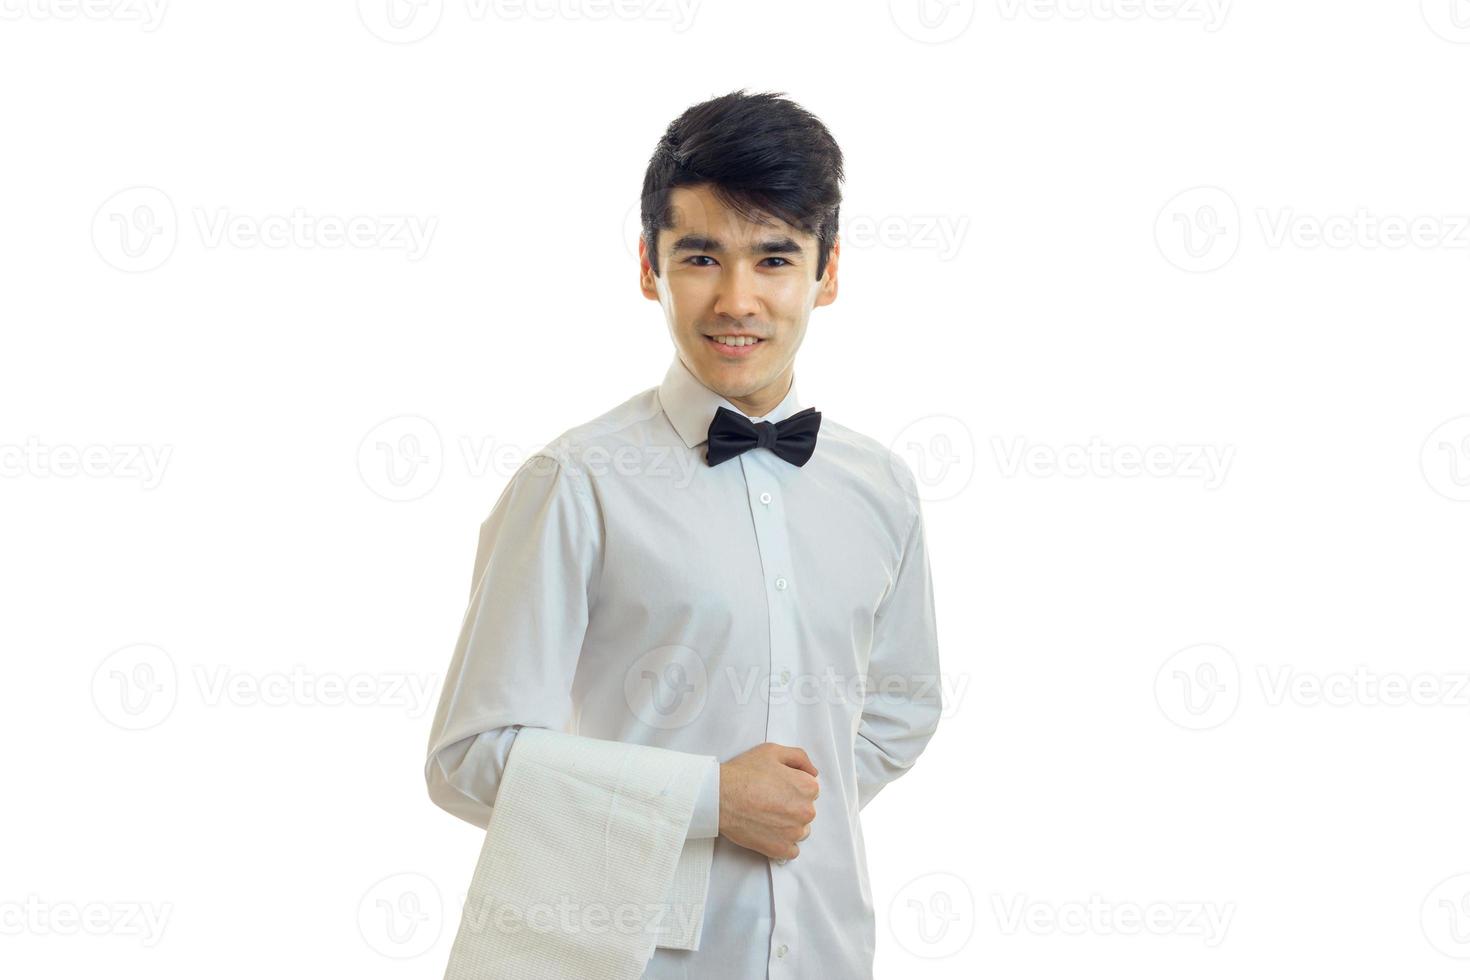 le jeune serveur tient une serviette à la main sourit et regarde dans un appareil photo